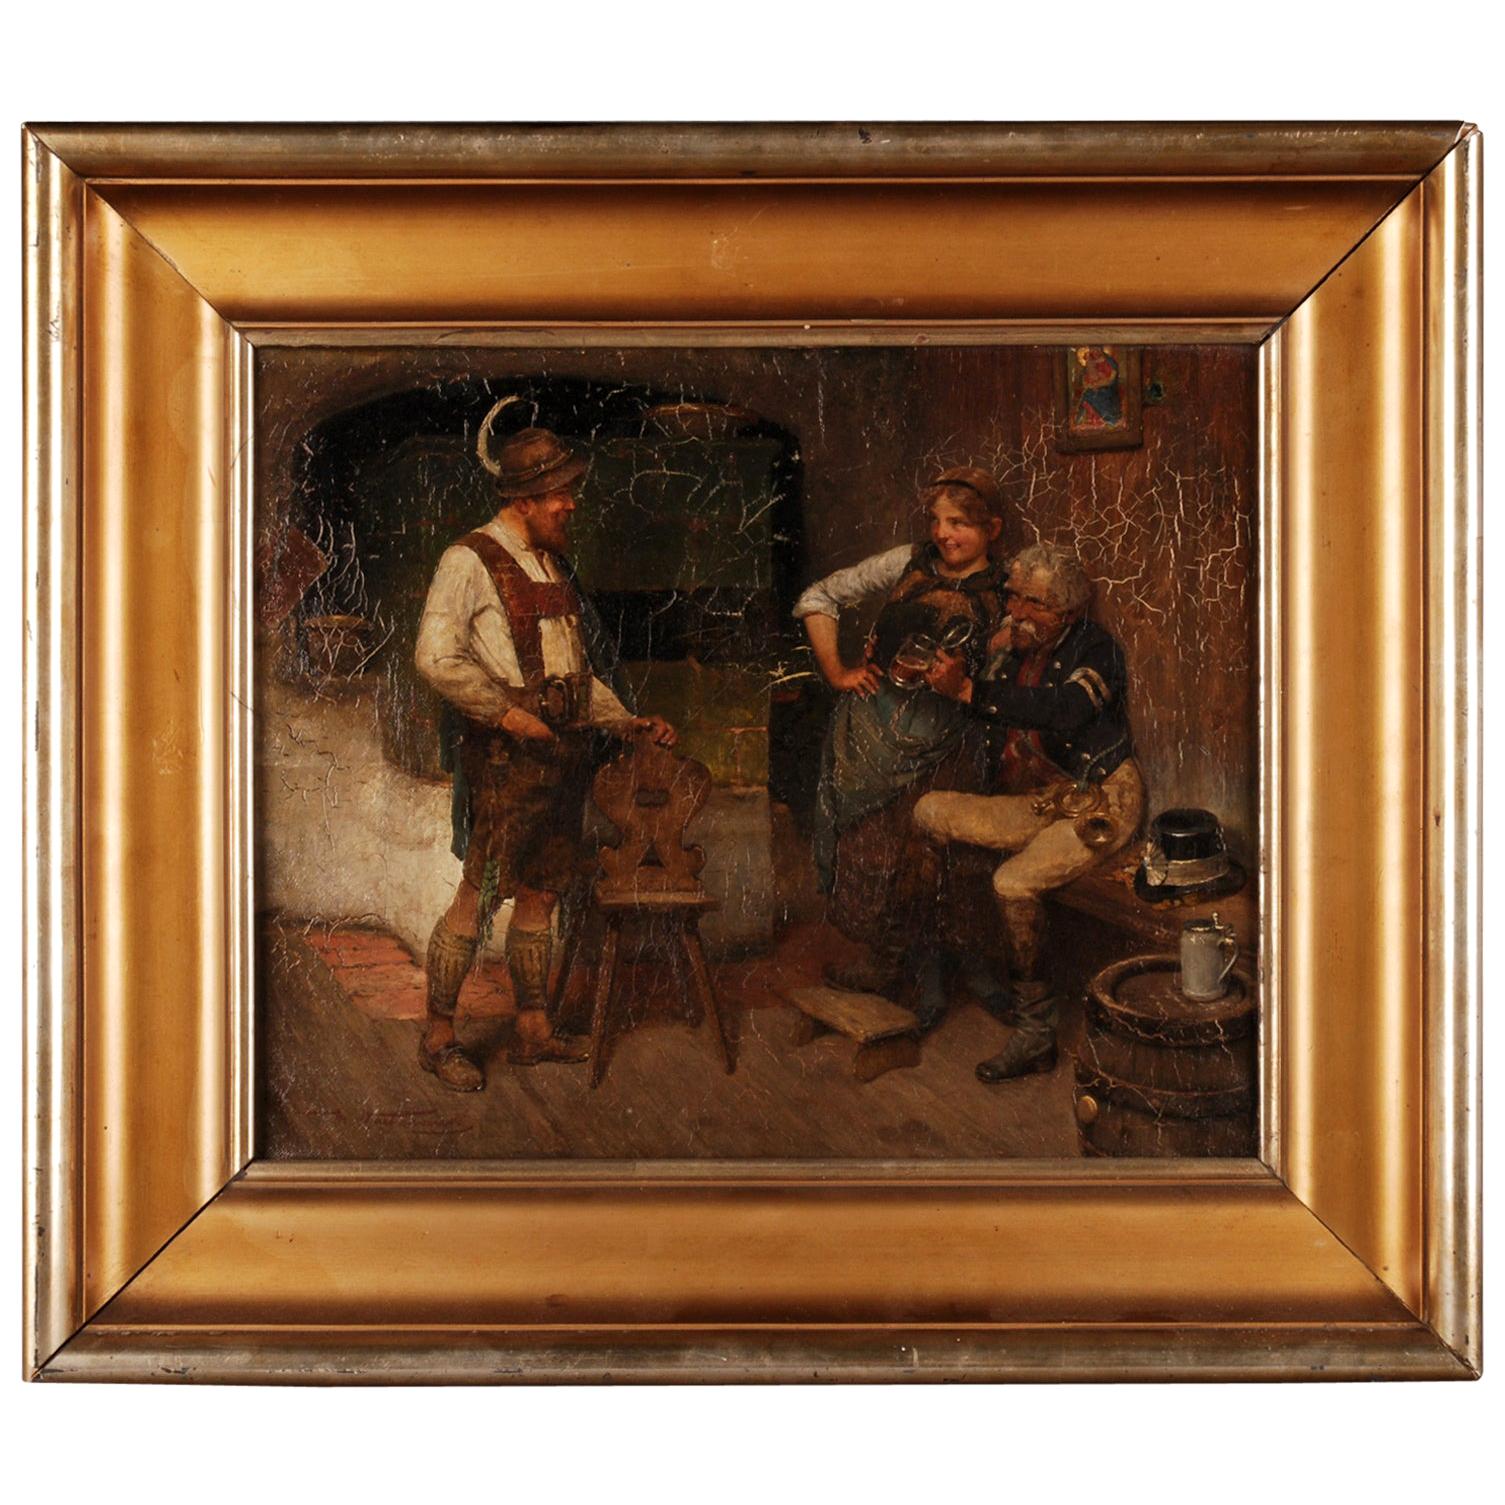 Ölgemälde von M. Wachsmuth aus dem 19. Jahrhundert, 1859-1912